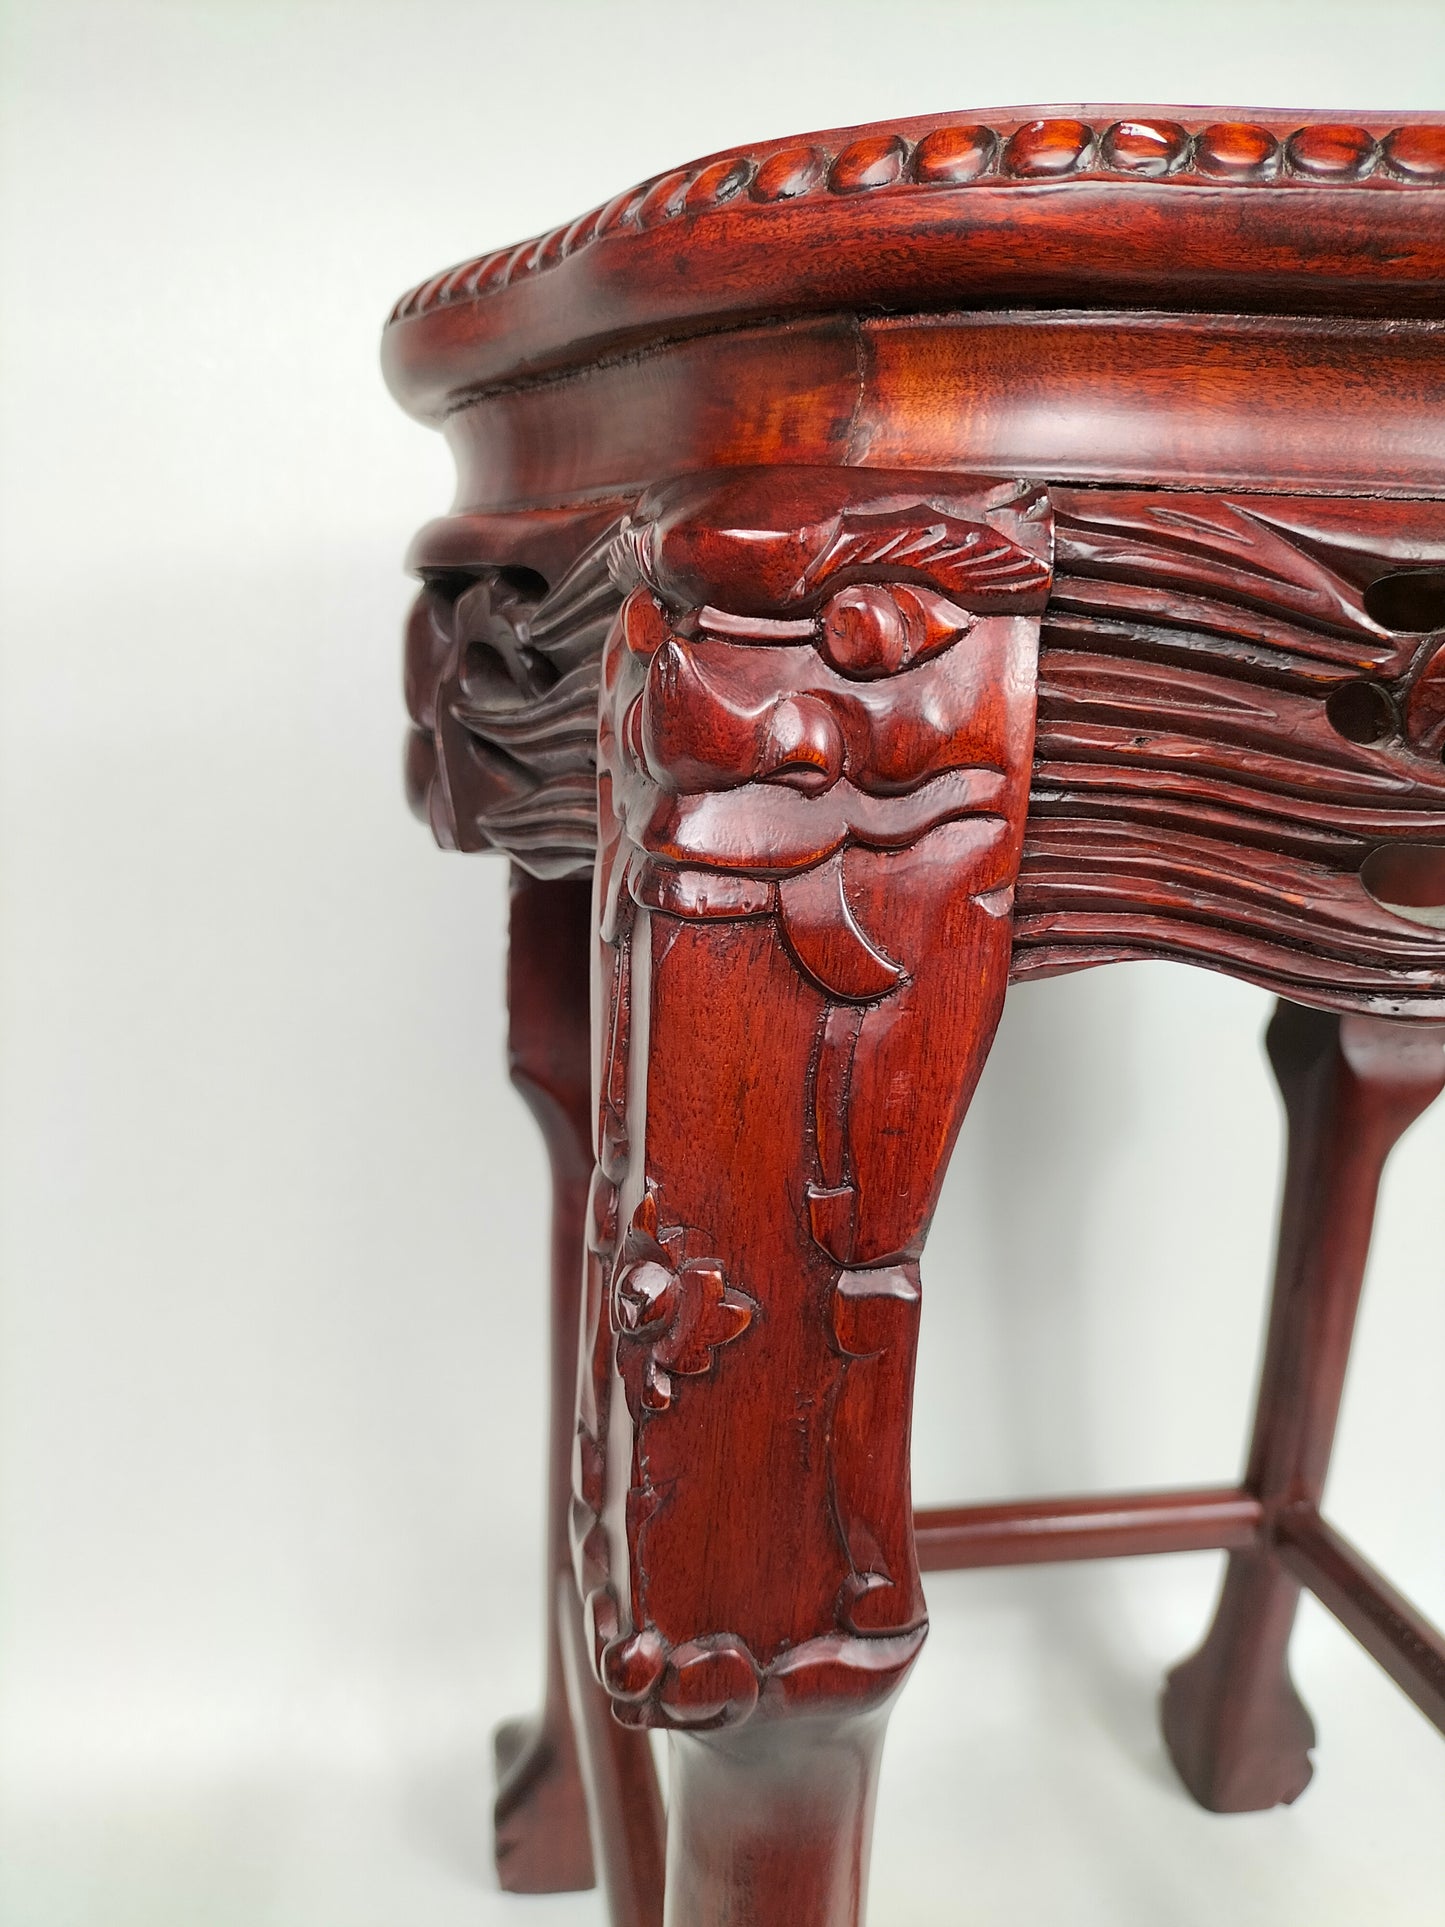 Bàn phụ bằng gỗ Trung Quốc được khảm mặt đá cẩm thạch // Gỗ hồng sắc - thế kỷ 20